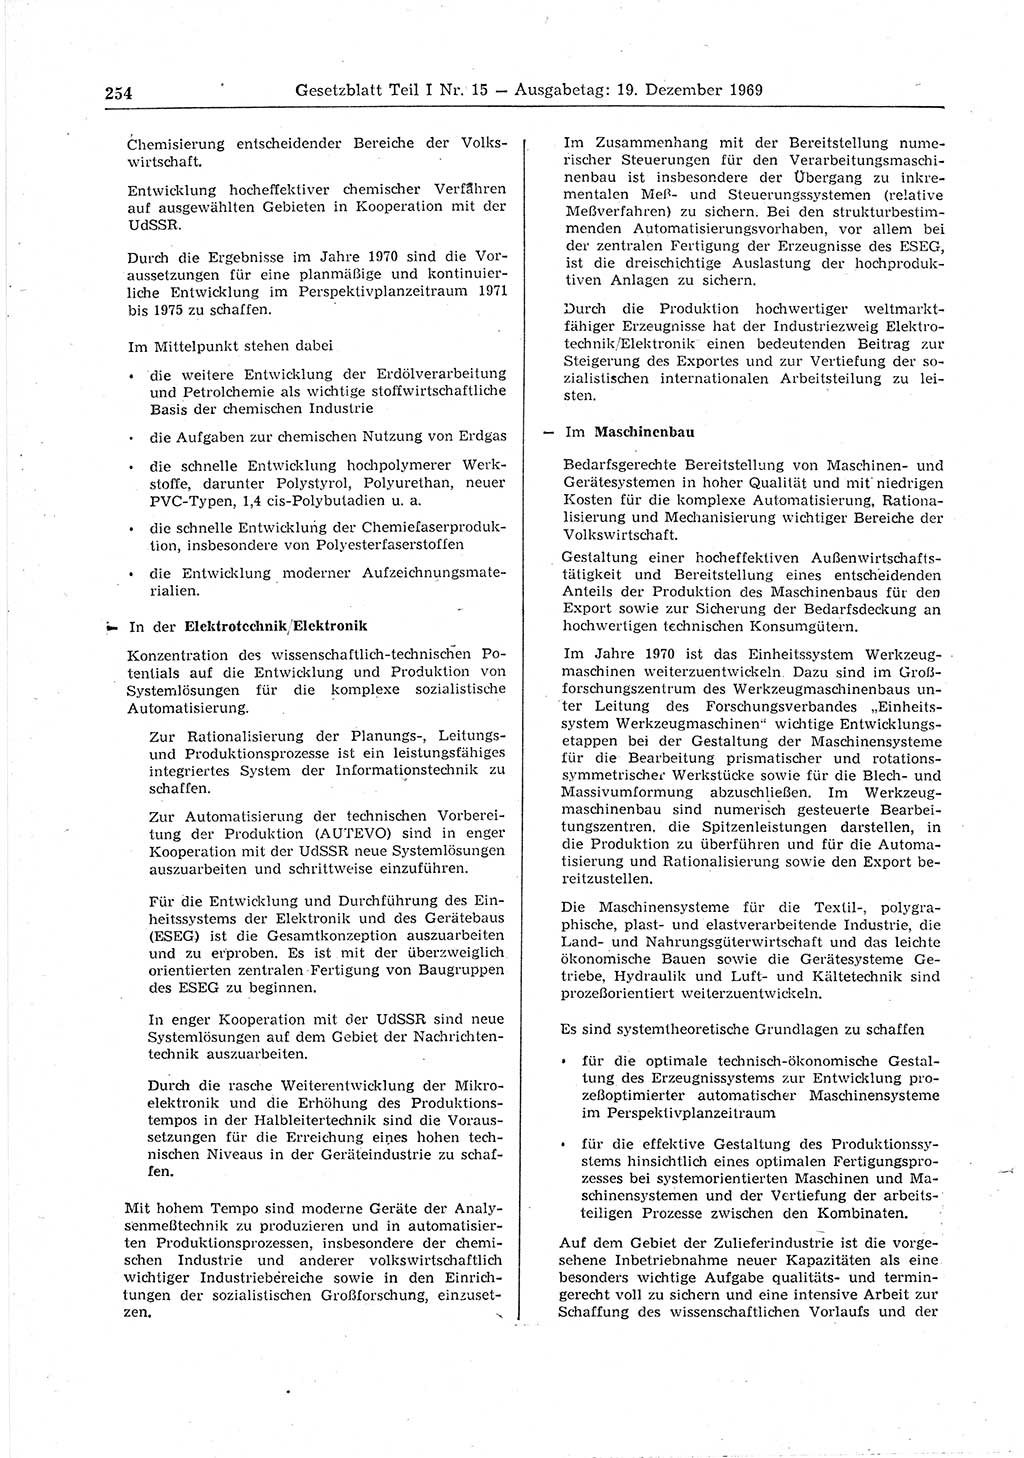 Gesetzblatt (GBl.) der Deutschen Demokratischen Republik (DDR) Teil Ⅰ 1969, Seite 254 (GBl. DDR Ⅰ 1969, S. 254)